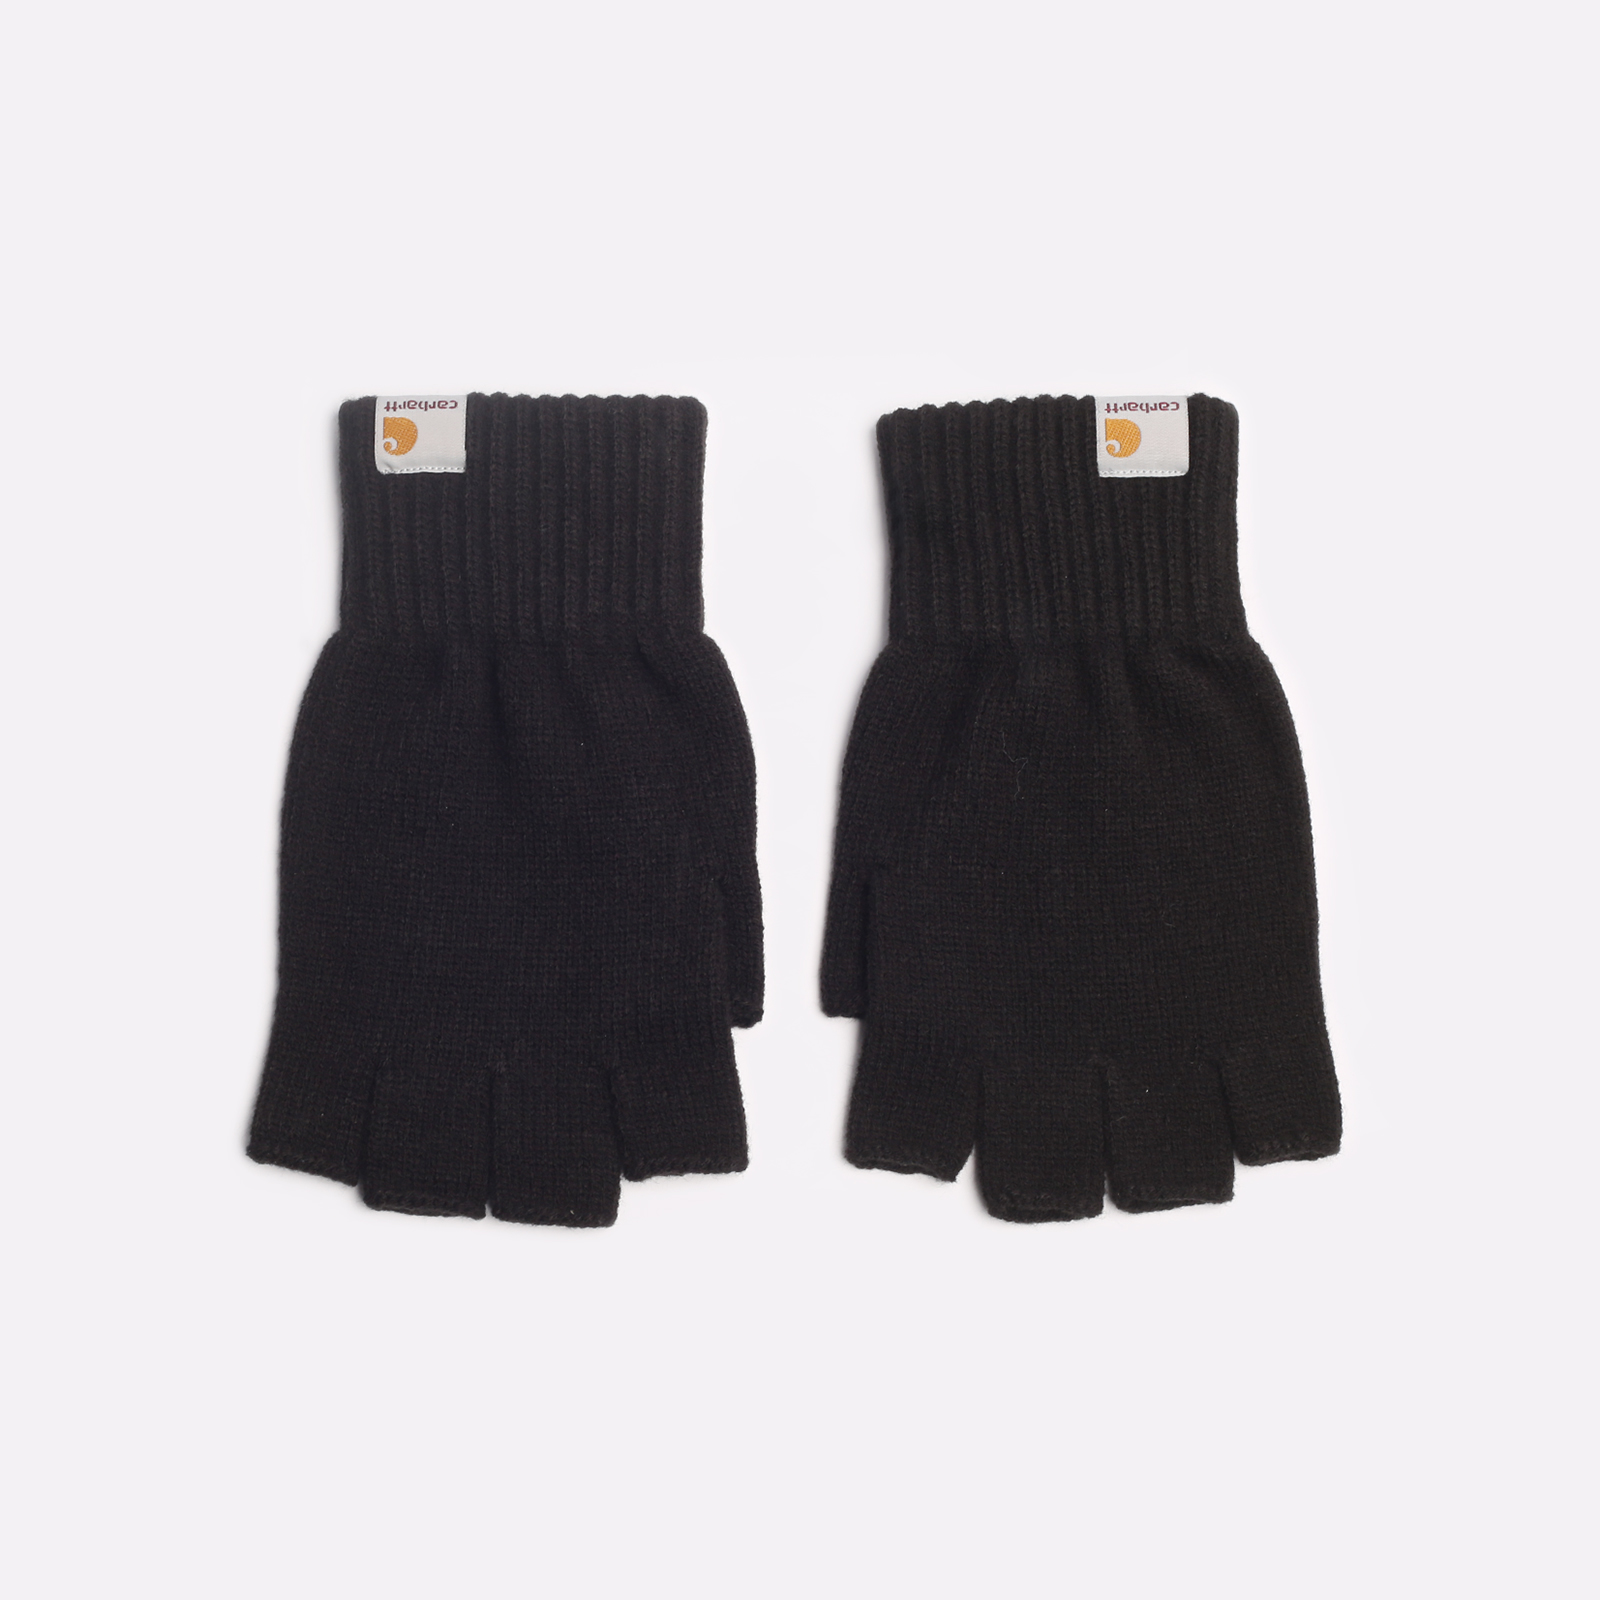  черные перчатки Carhartt WIP Mitten i026559-black - цена, описание, фото 1